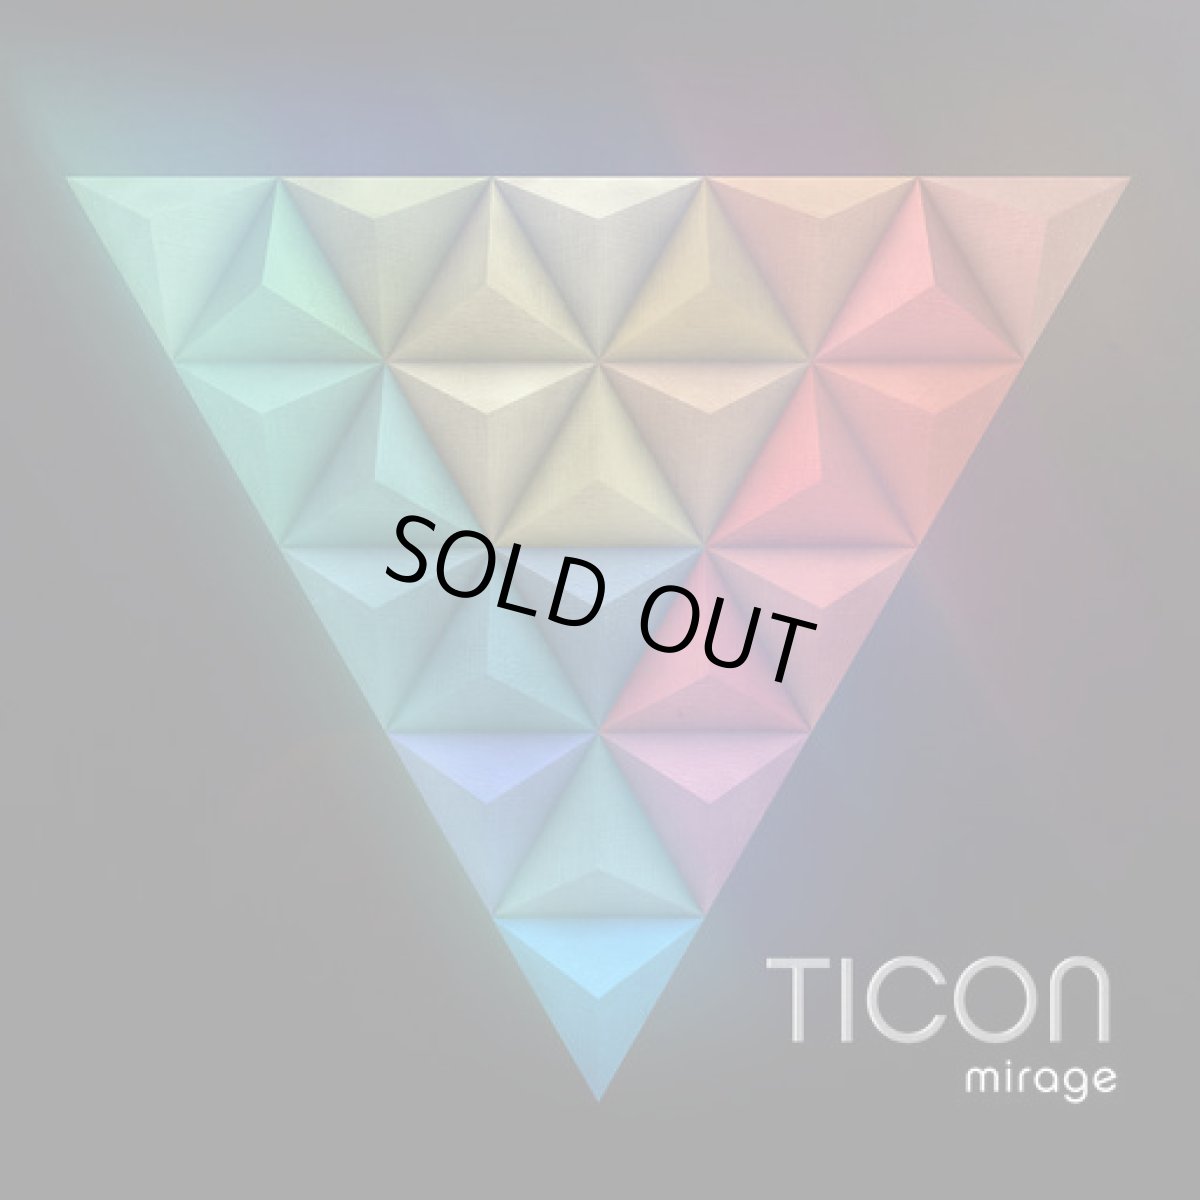 画像1: CD「TICON / Mirage」【プログレッシブトランス】 (1)